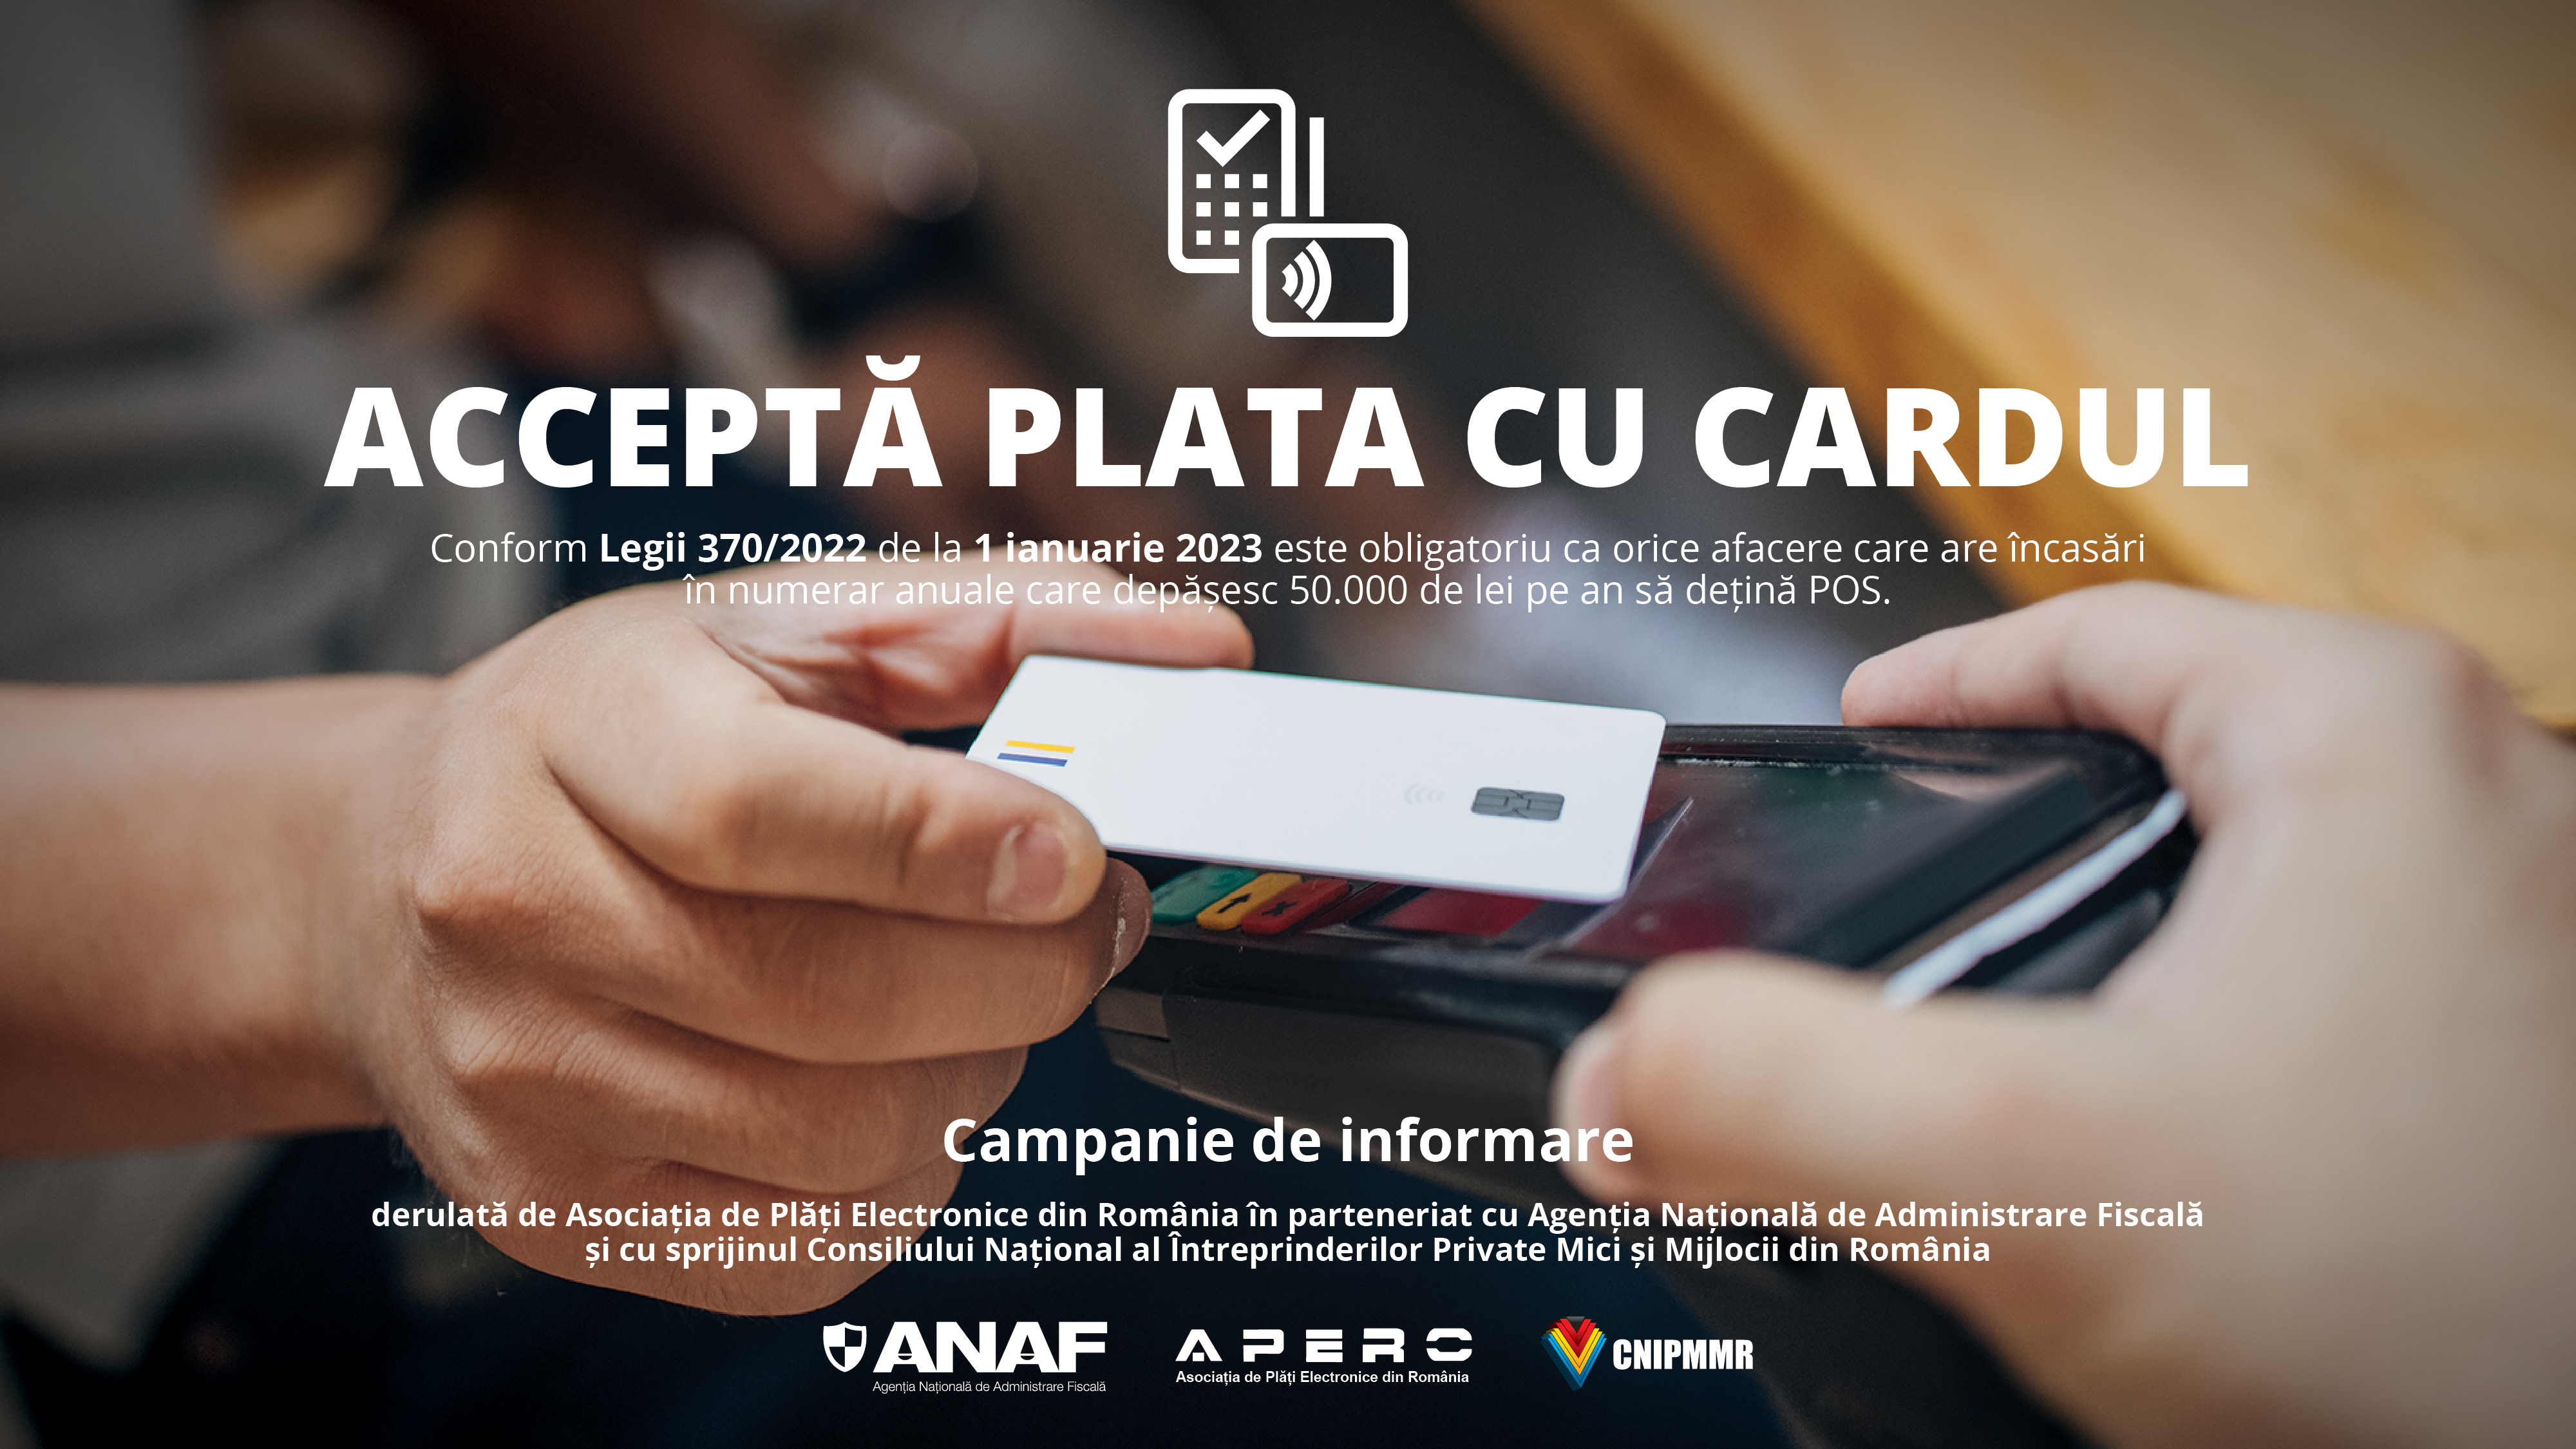 APERO și ANAF lansează campania de informare pentru IMMuri ACCEPTA PLATA CU CARDUL